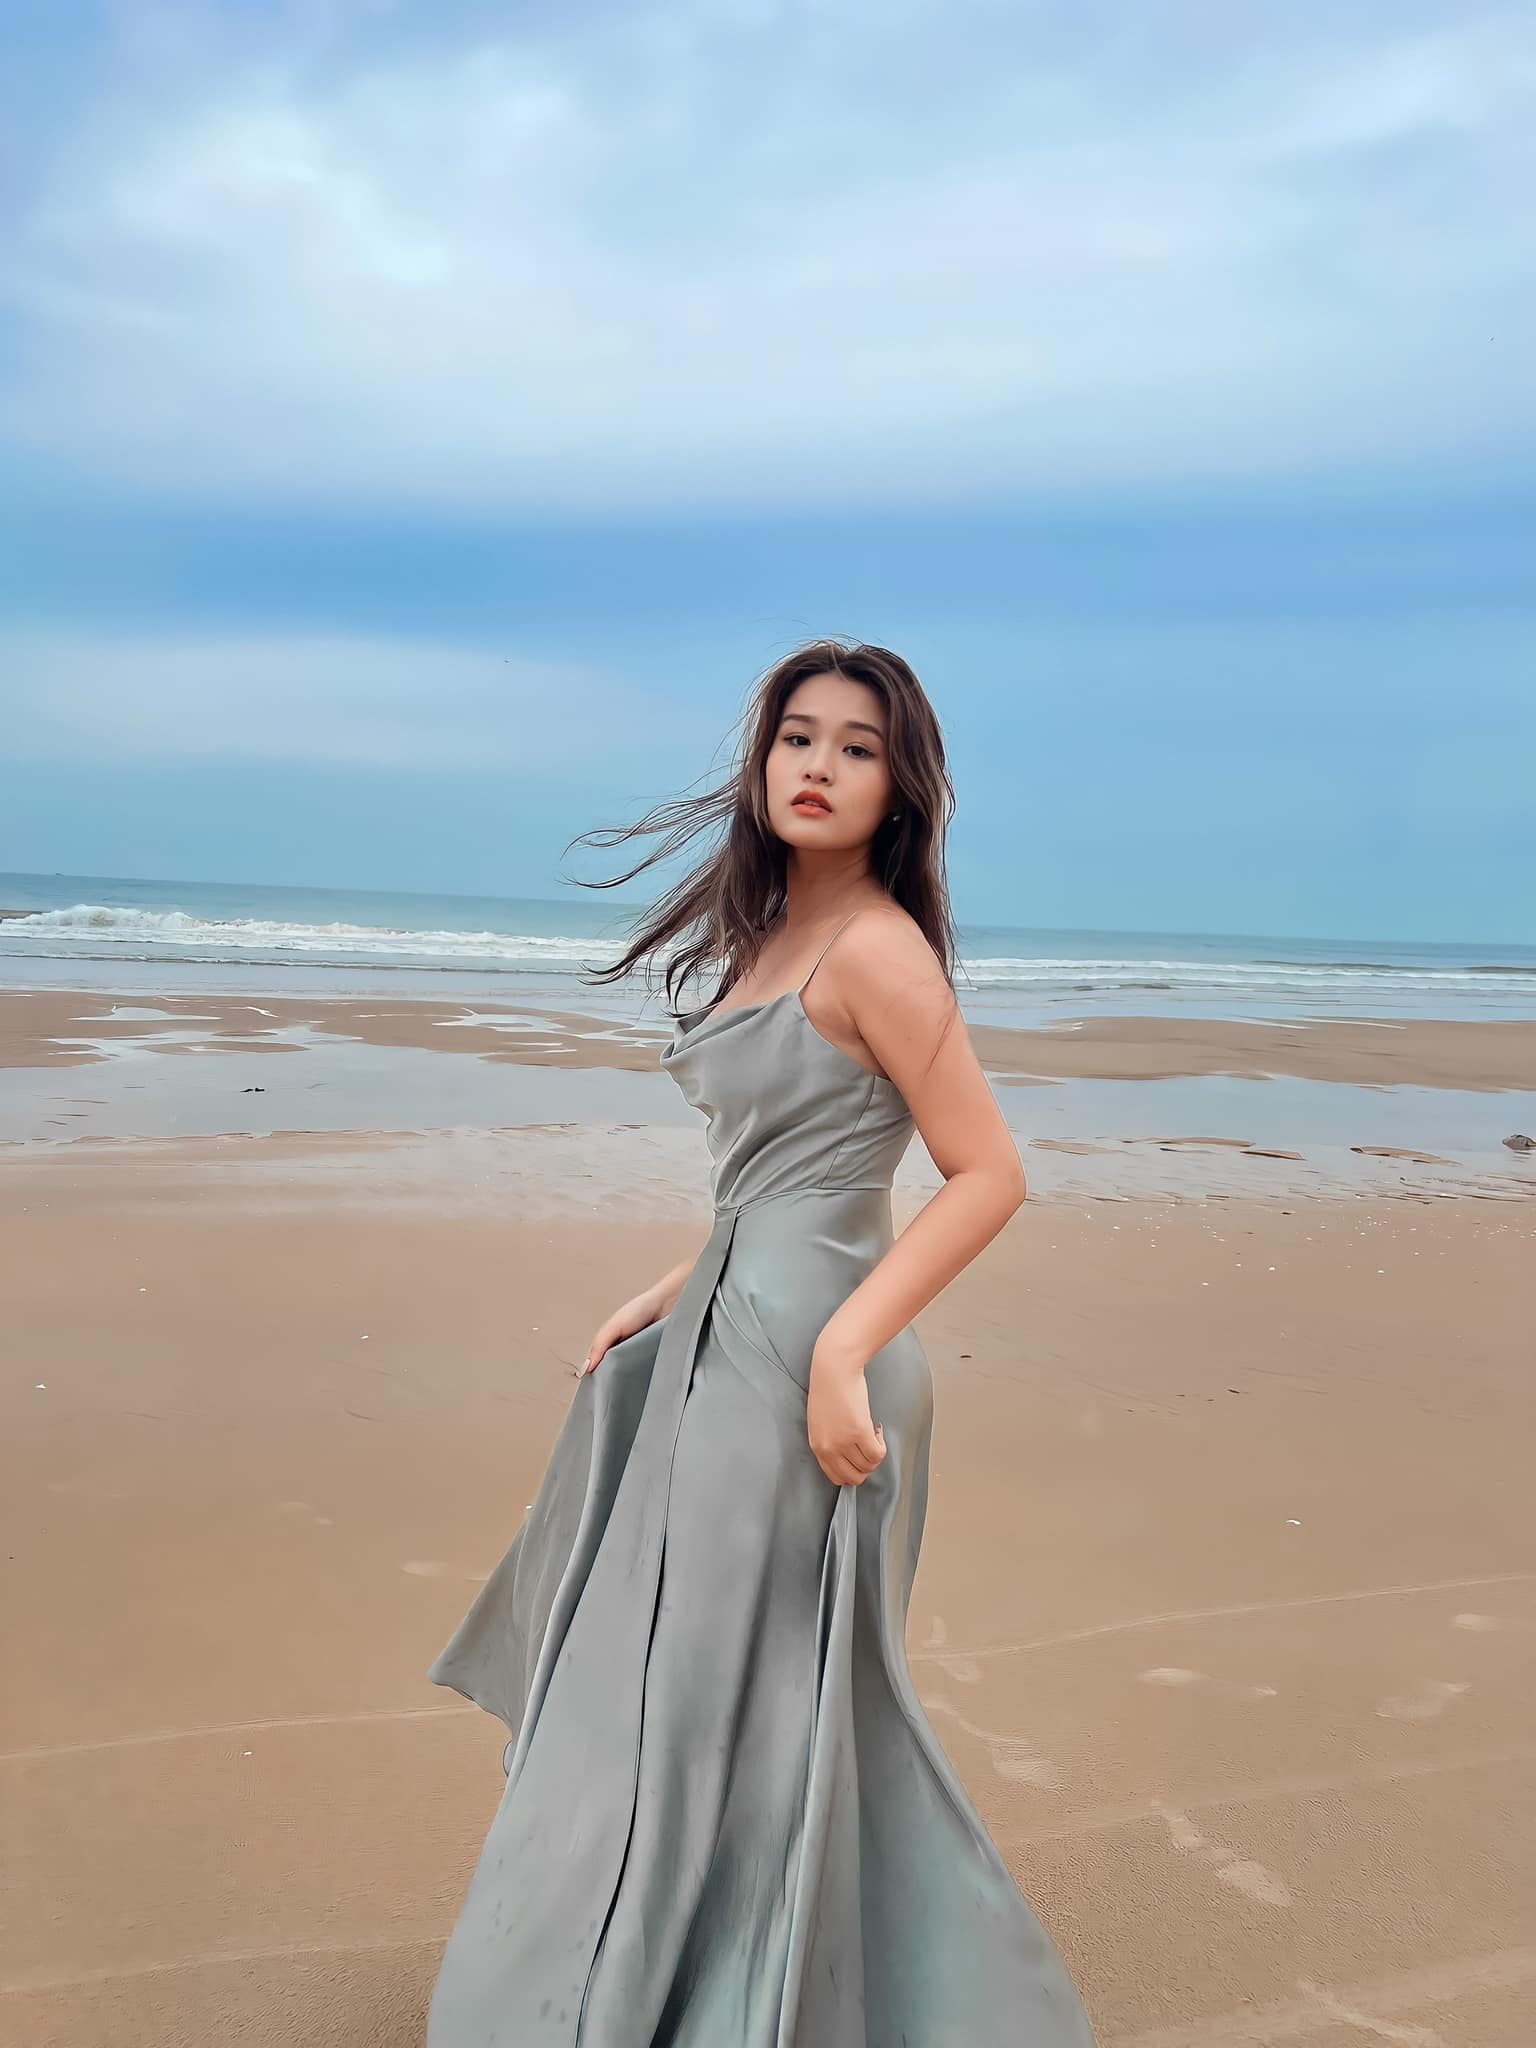 Dàn mỹ nam mỹ nữ nhà sao Việt: Đẹp như tạc tượng, tài năng, ngoan hiền hết phần thiên hạ- Ảnh 22.